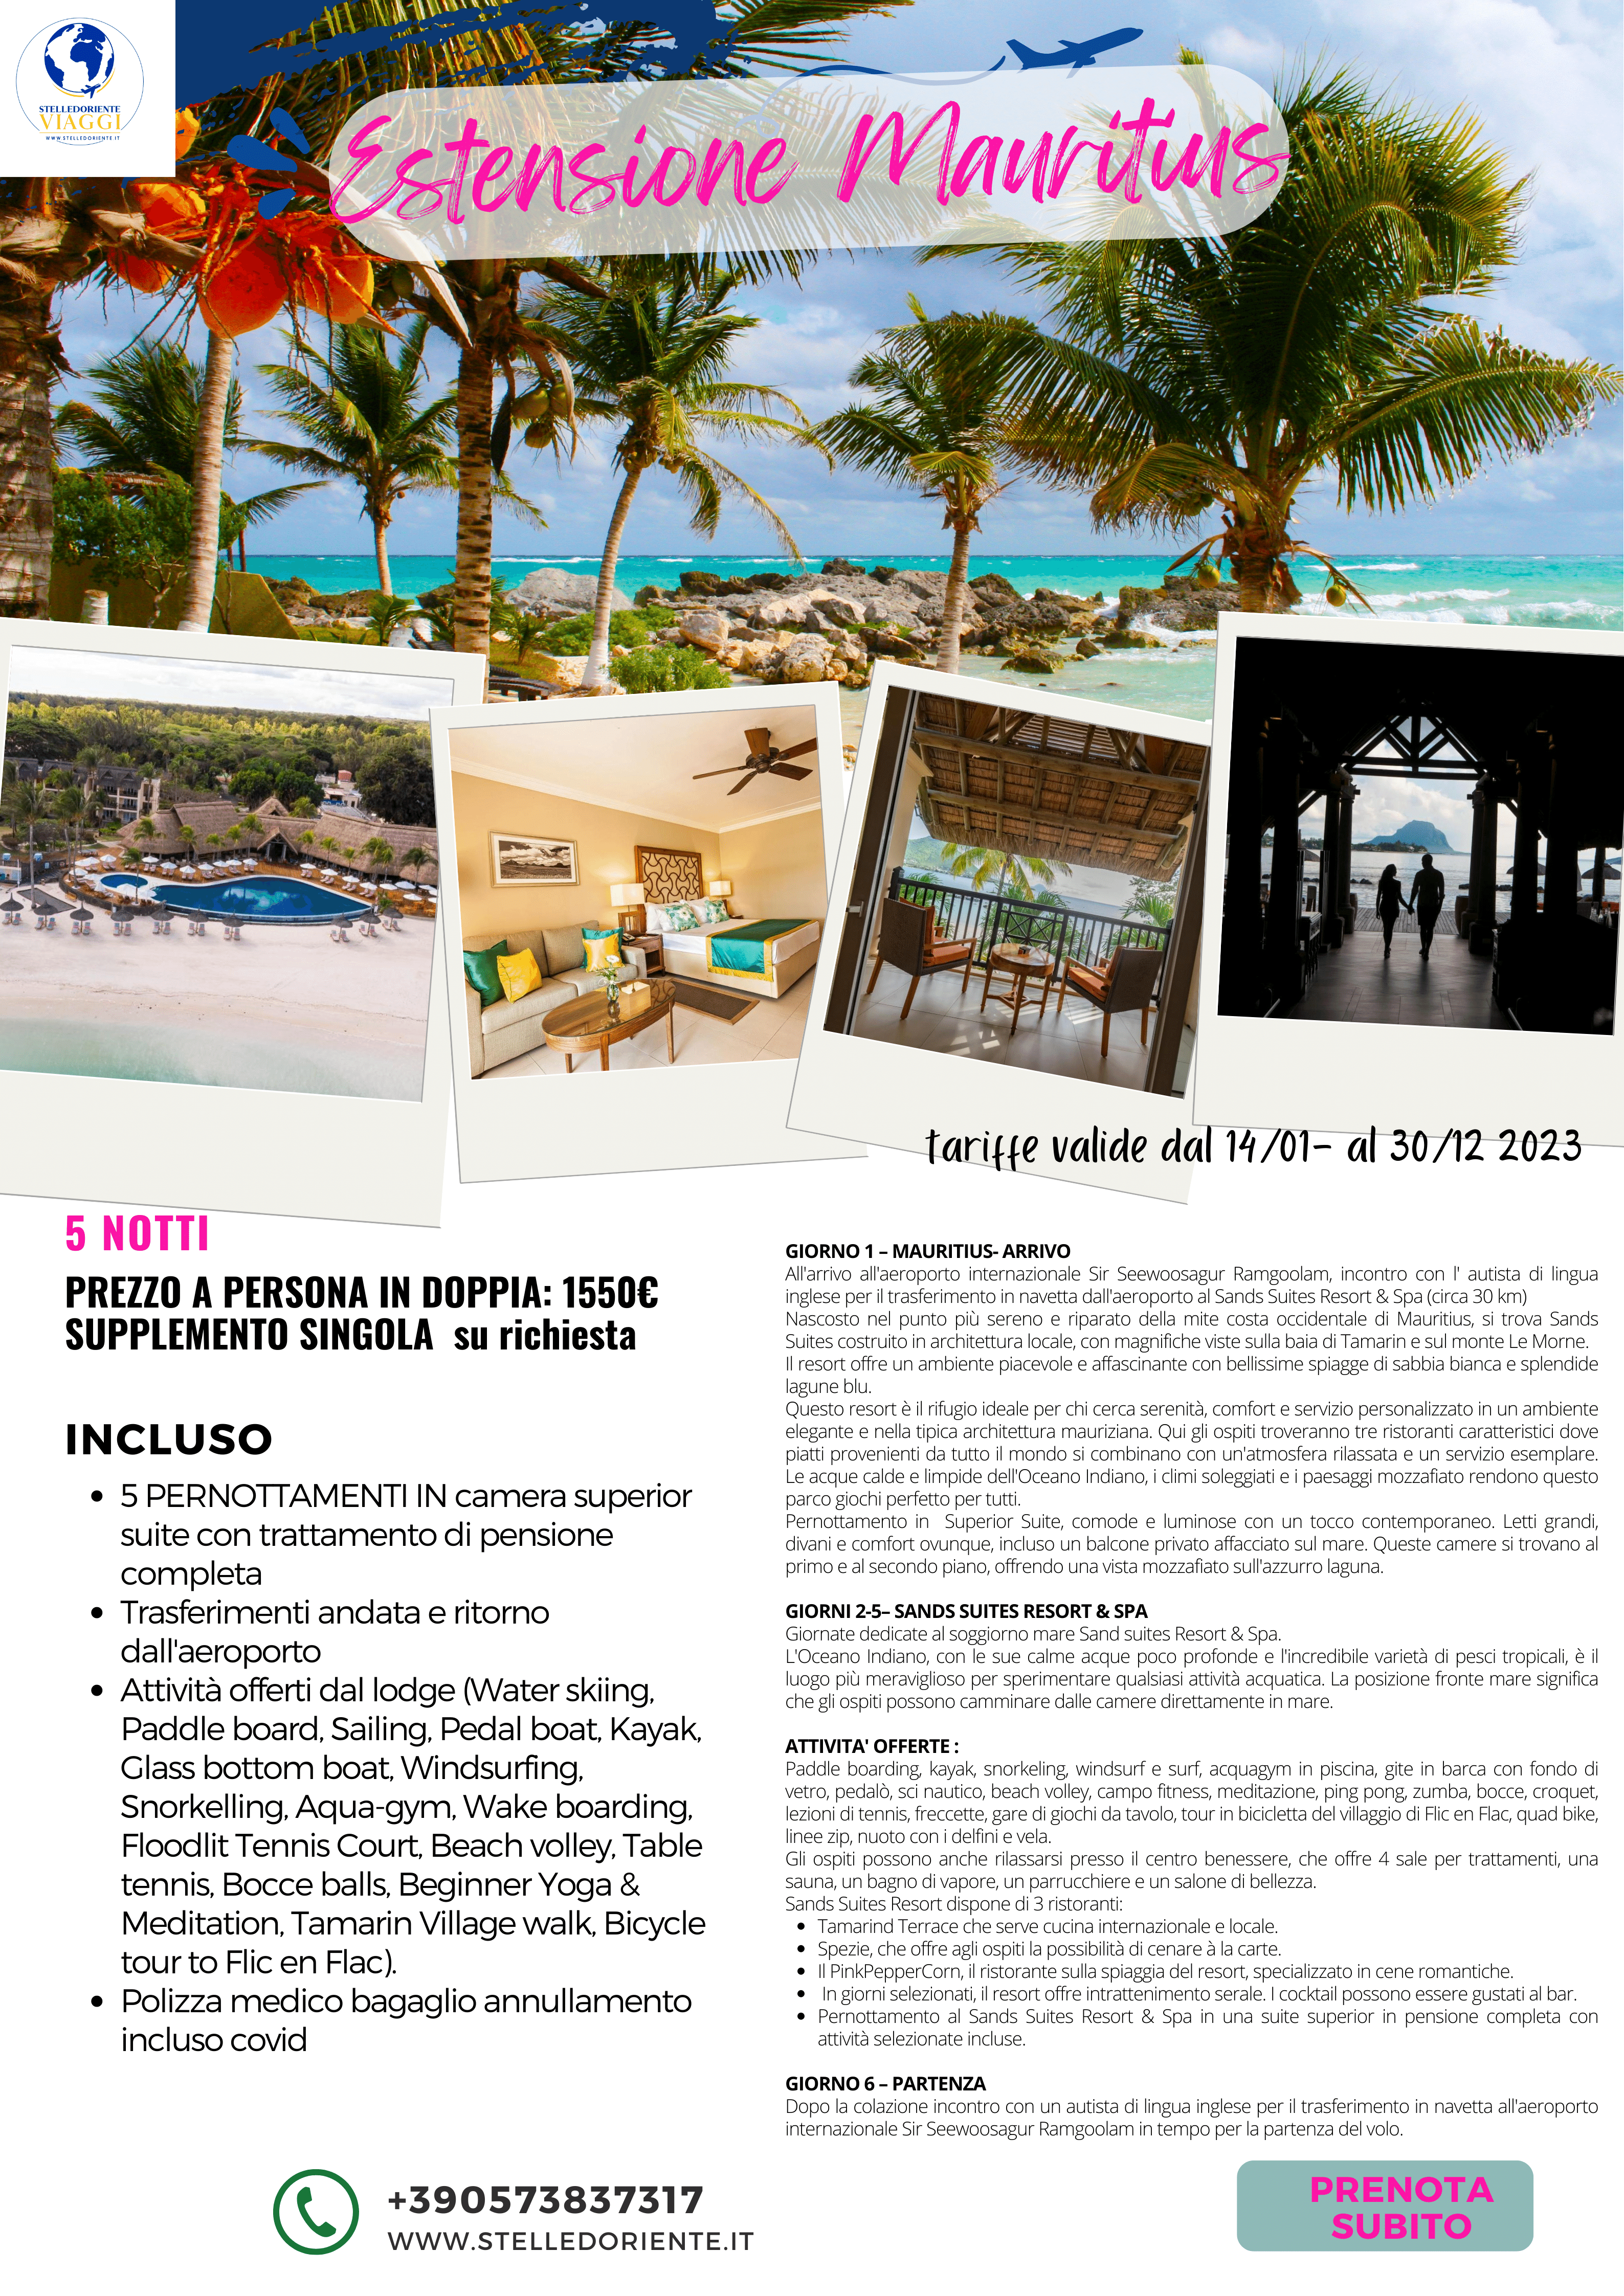 pacchetto organizzato mauritius promo pacchetto tutto incluso pensione completa da non perdere resort fronte mare  di stelledoriente